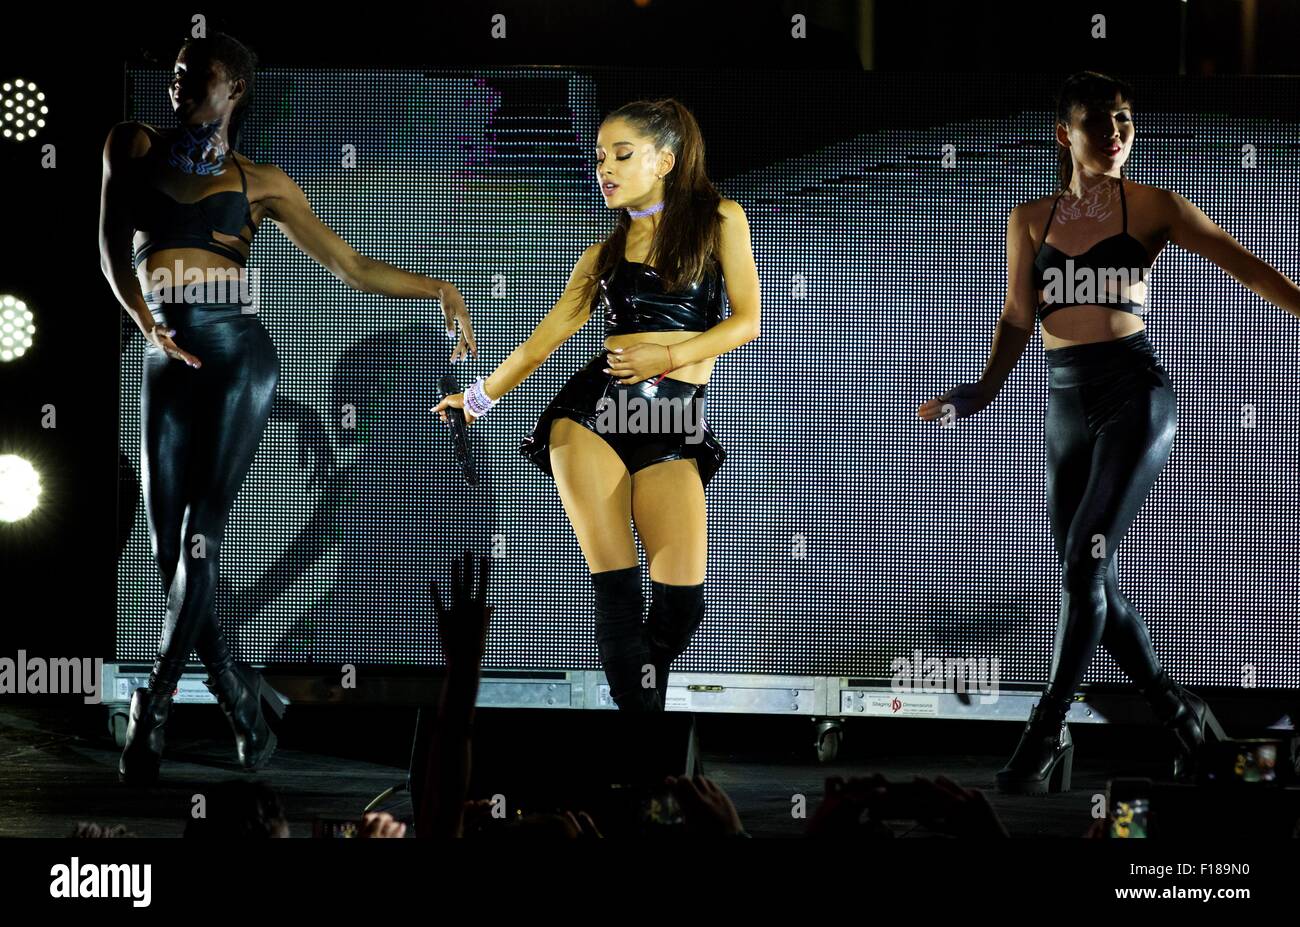 Die 29. jährliche Tanz auf dem Pier 26 in New York City mit: Ariana Grande wo: New York City, New York, Vereinigte Staaten, wann: 28. Juni 2015 Stockfoto